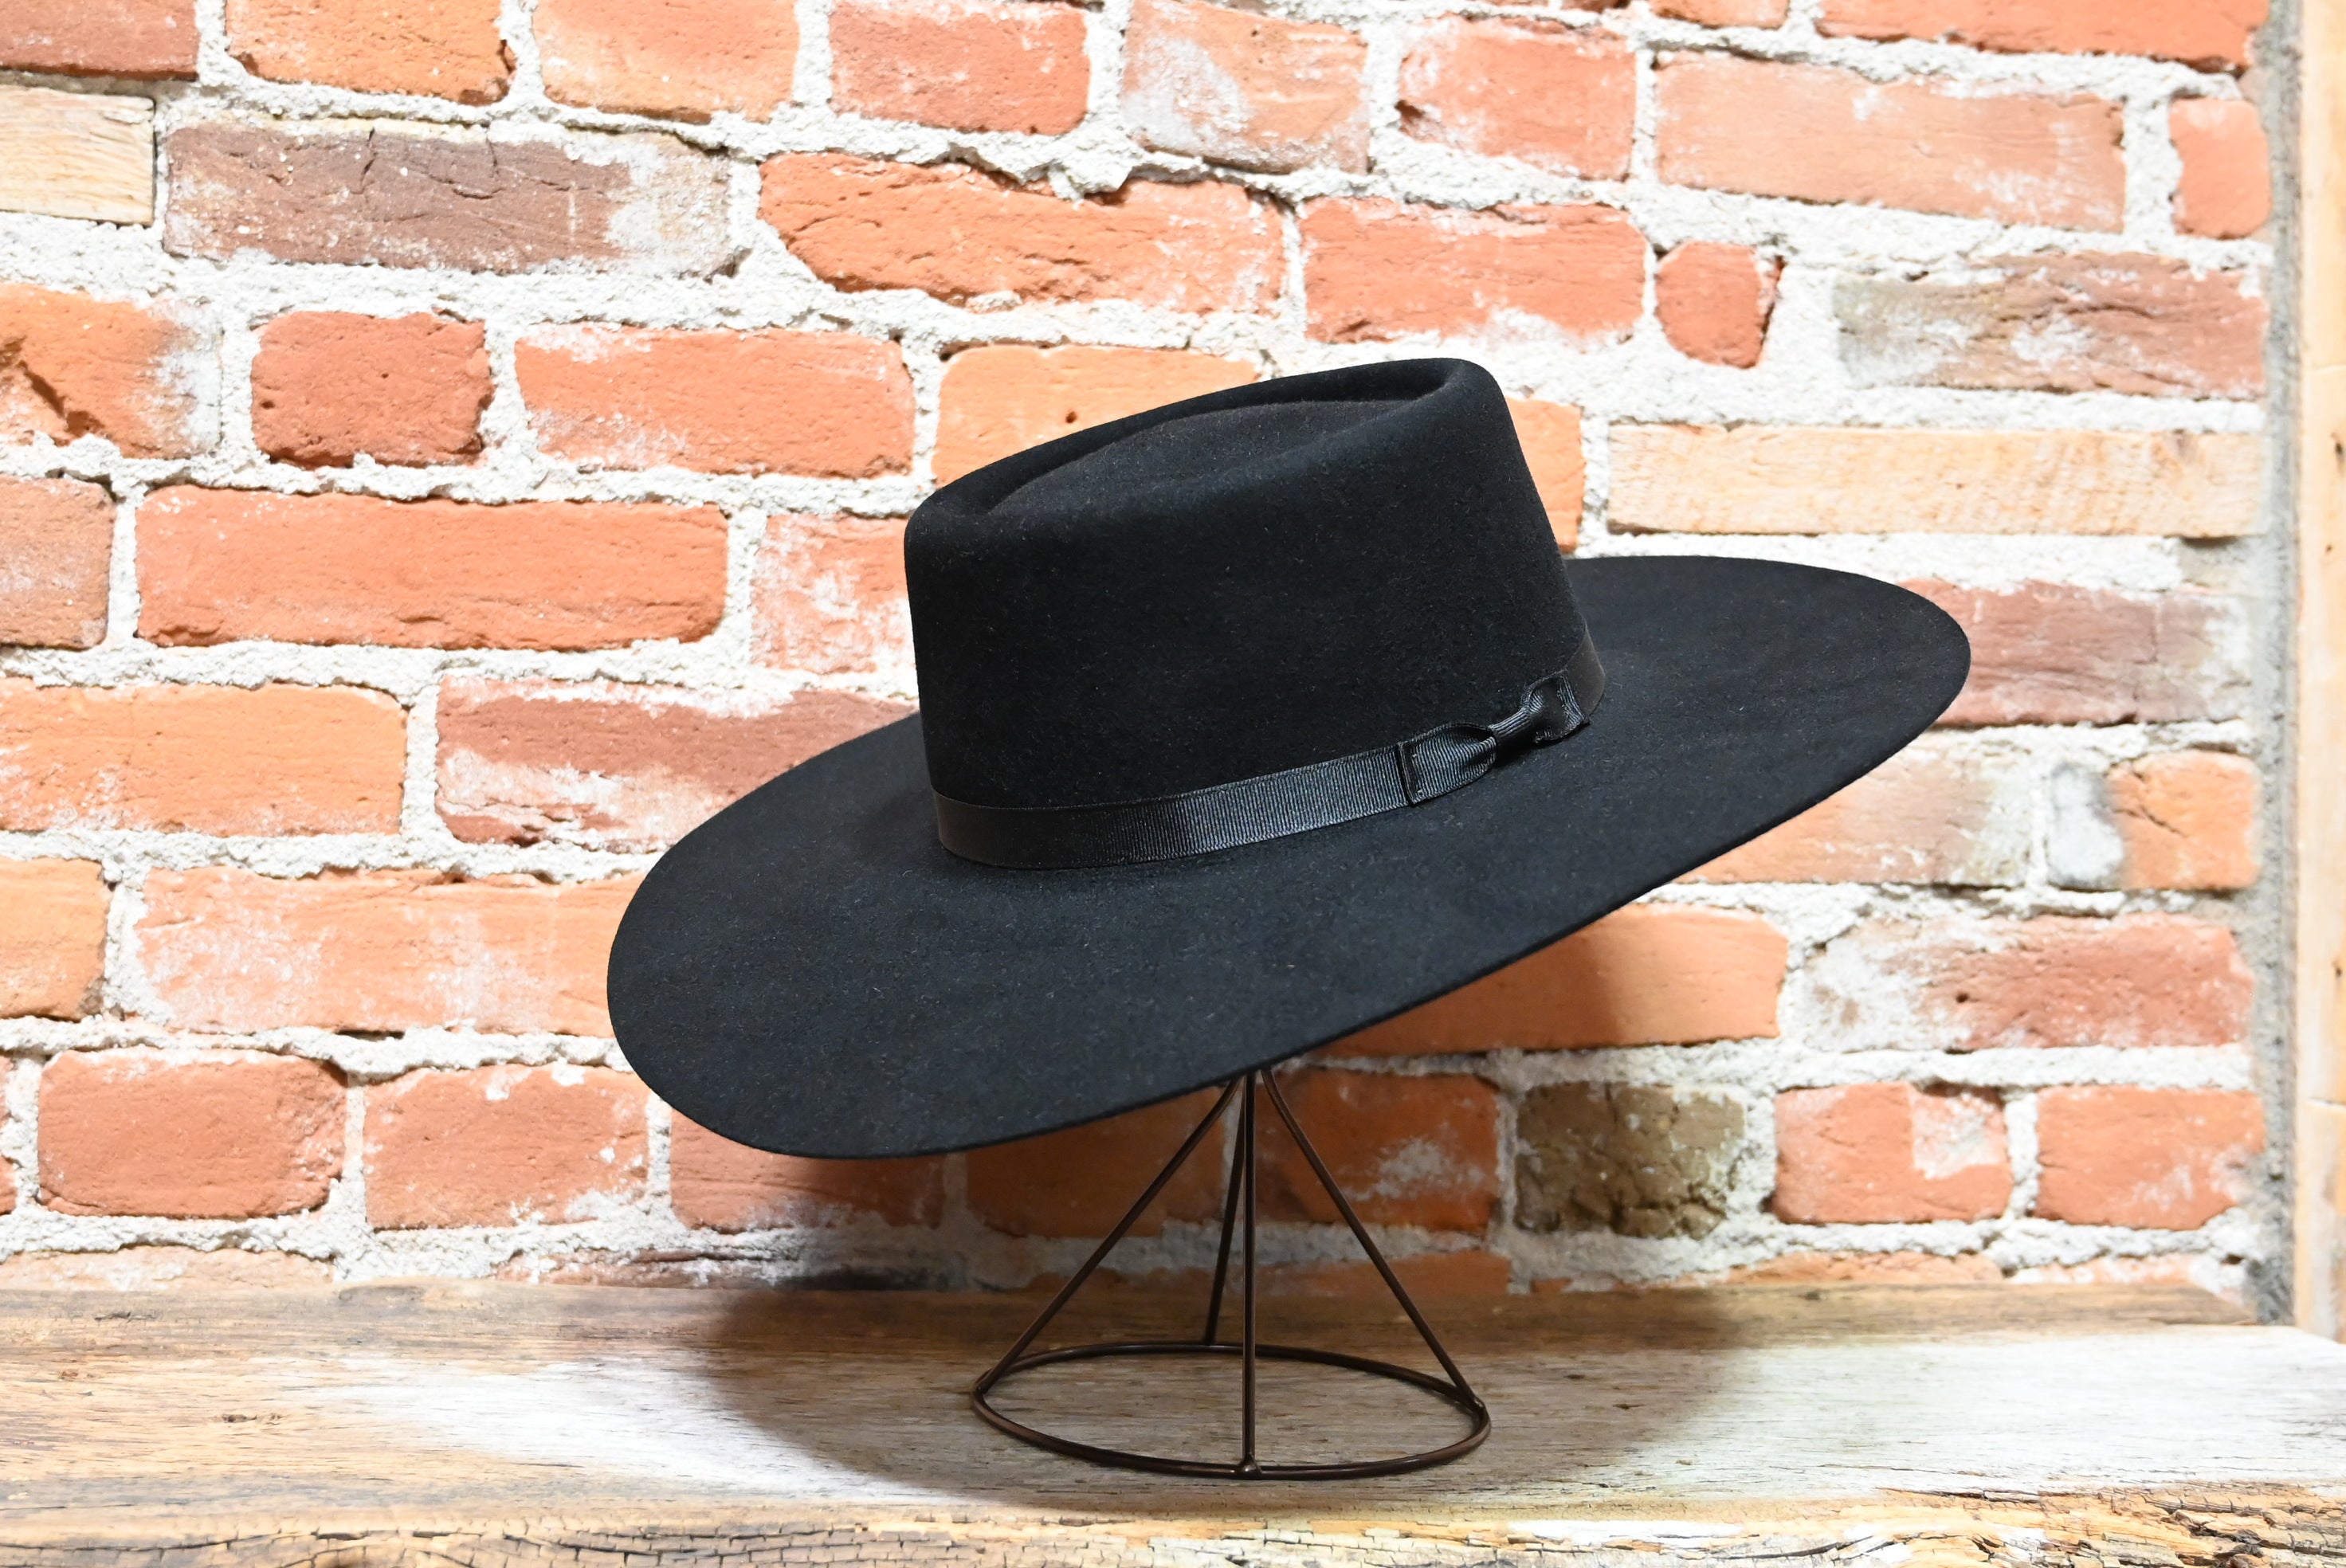 Serratelli 8x Nevada Flat in Black Hat Size 7 5/8